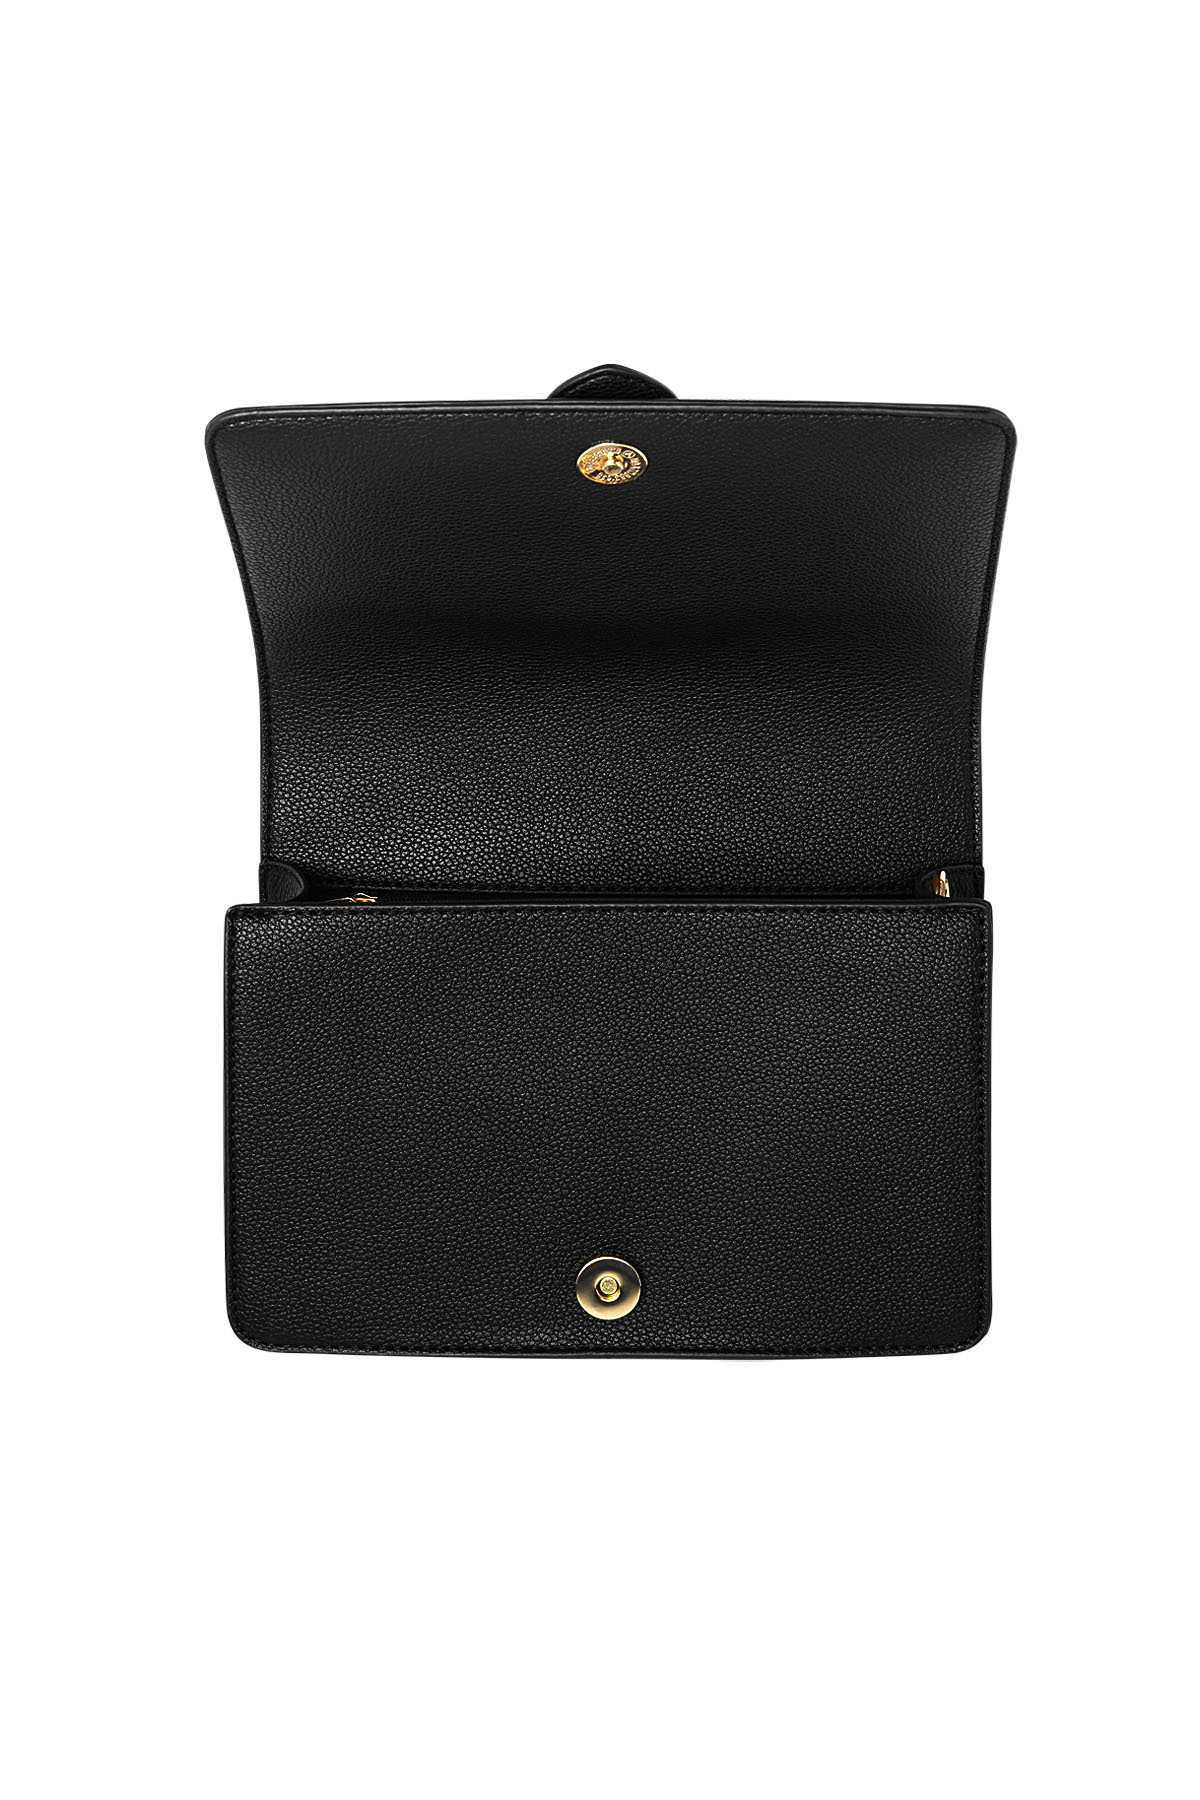 Çanta tokası klas - siyah Resim5